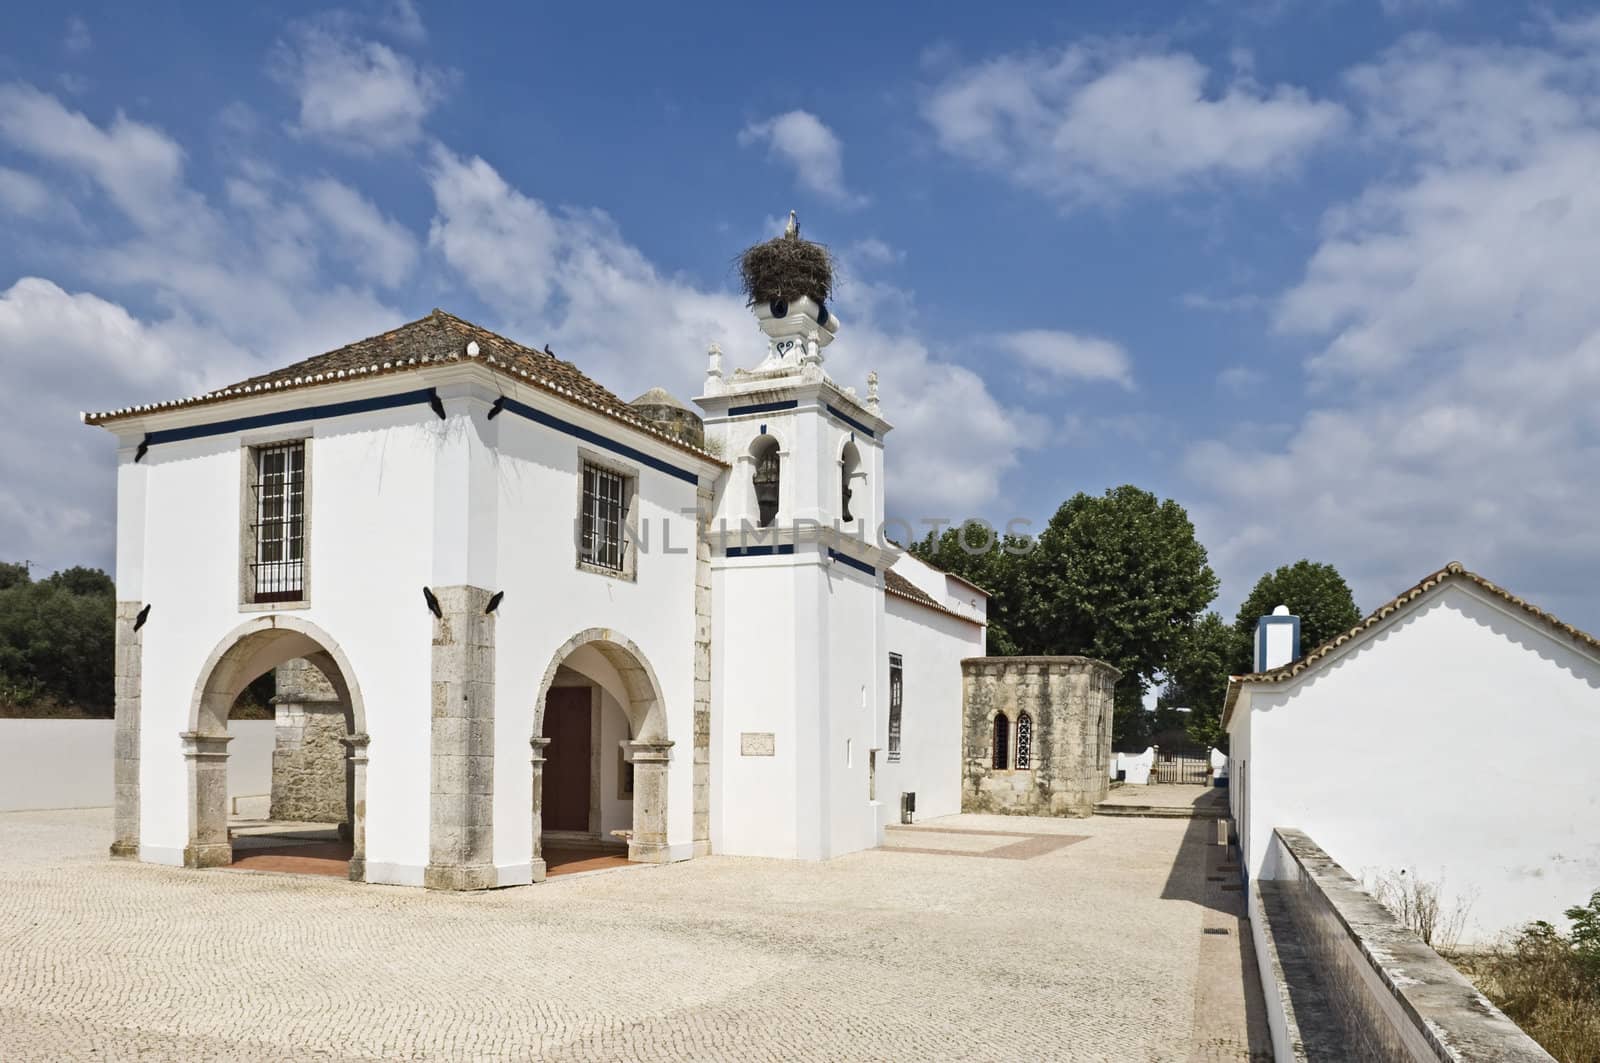 Santuario do Senhor dos Martires,  Alcacer do Sal, Alentejo, Portugal
